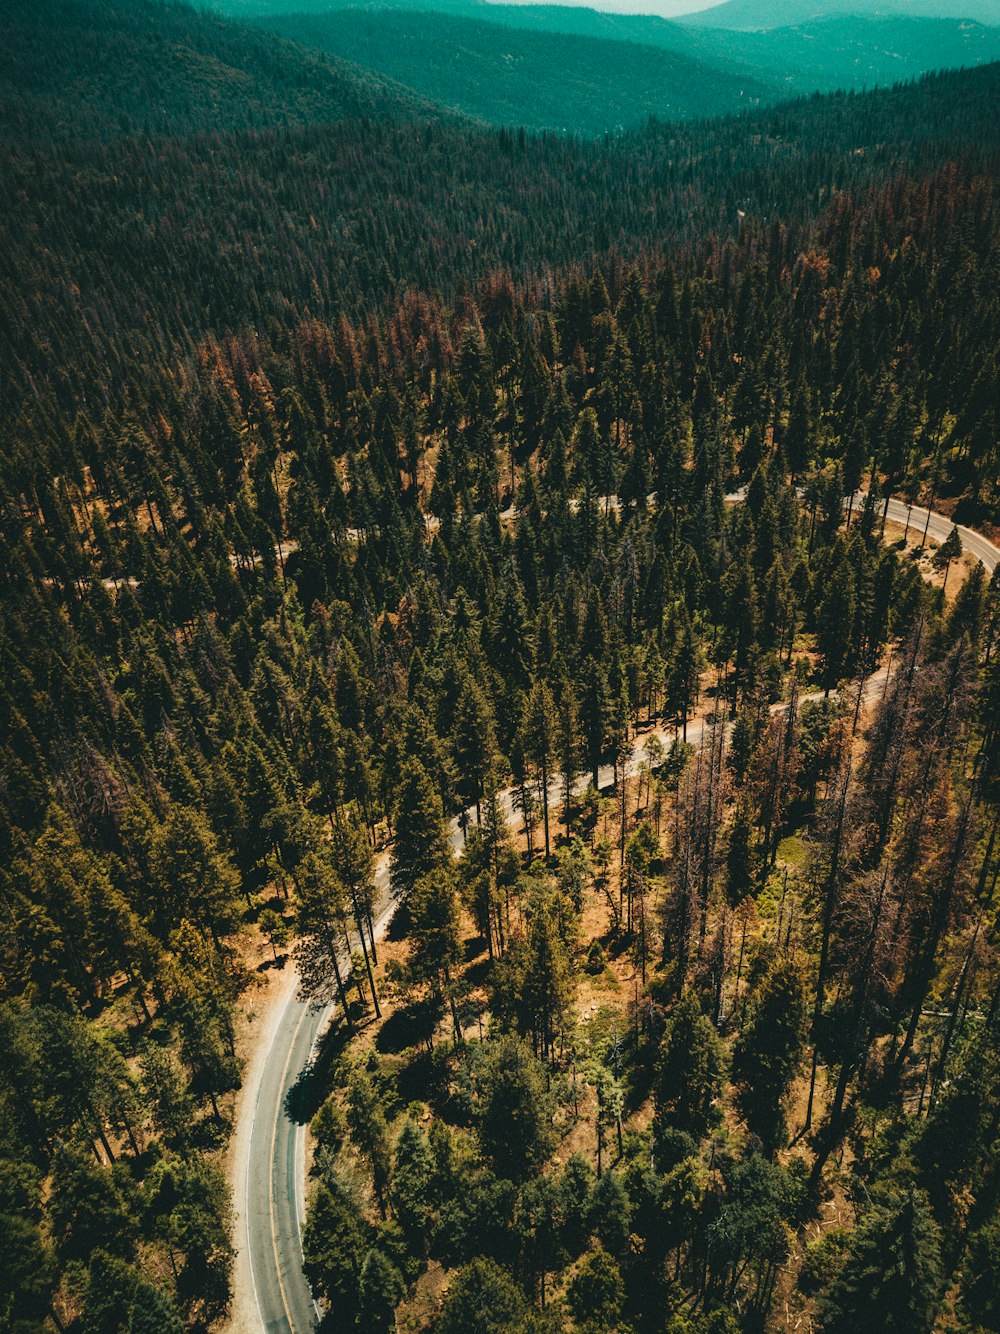 couverture de montagne avec arbres avec photographie aérienne de chaussée